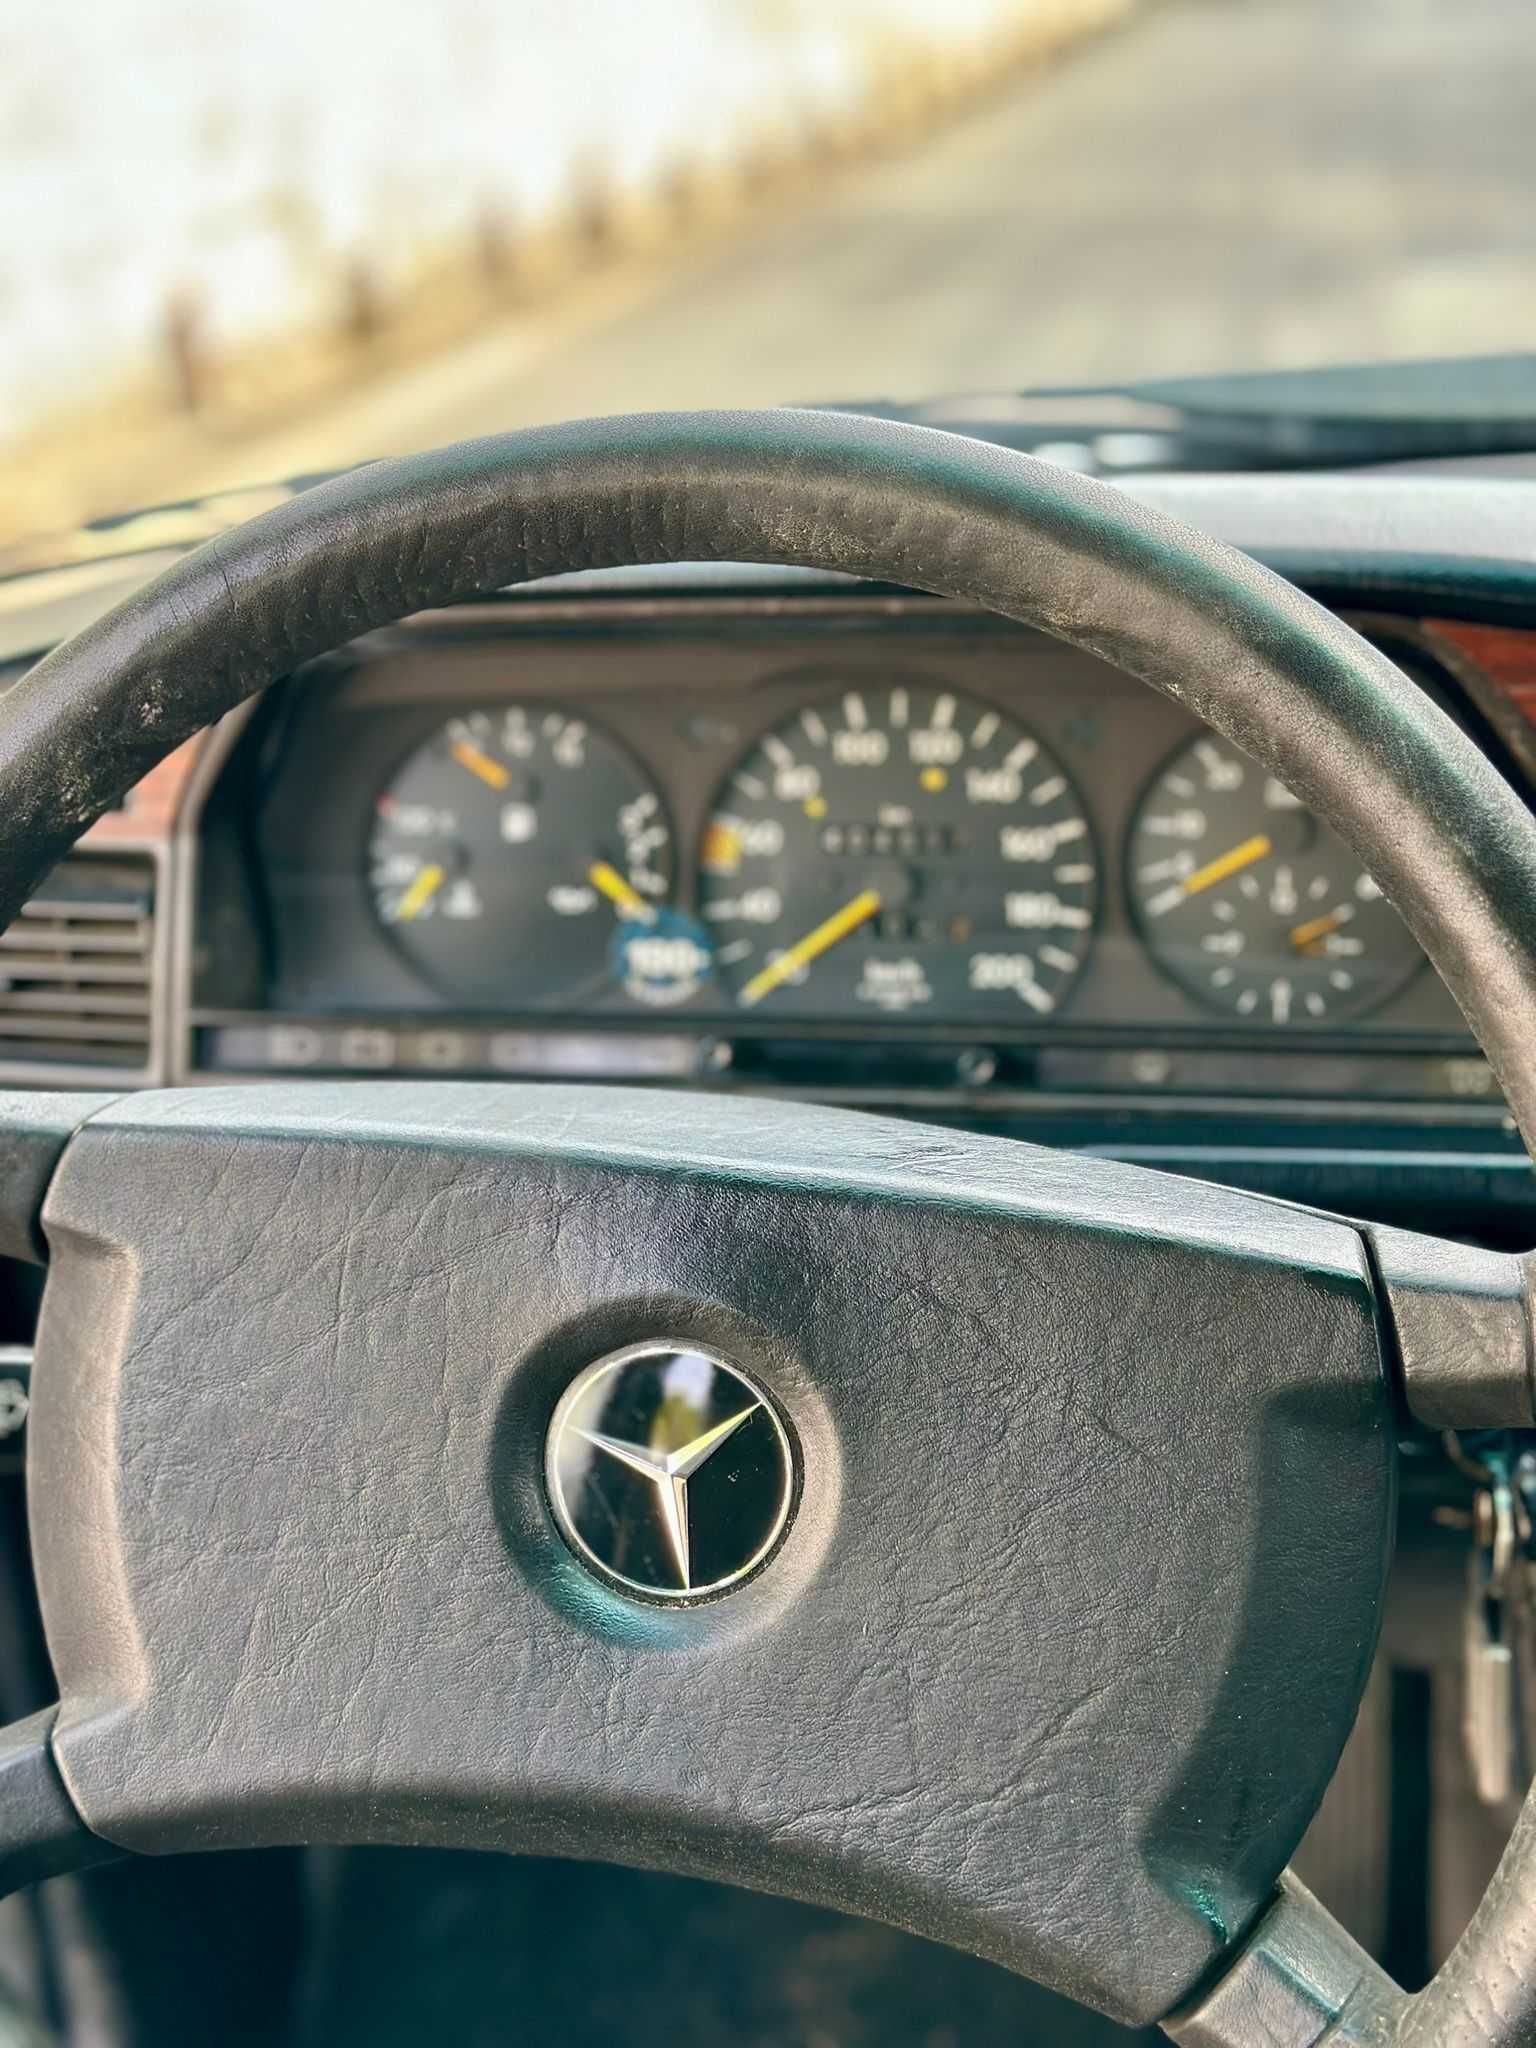 Mercedes 190D - 1990